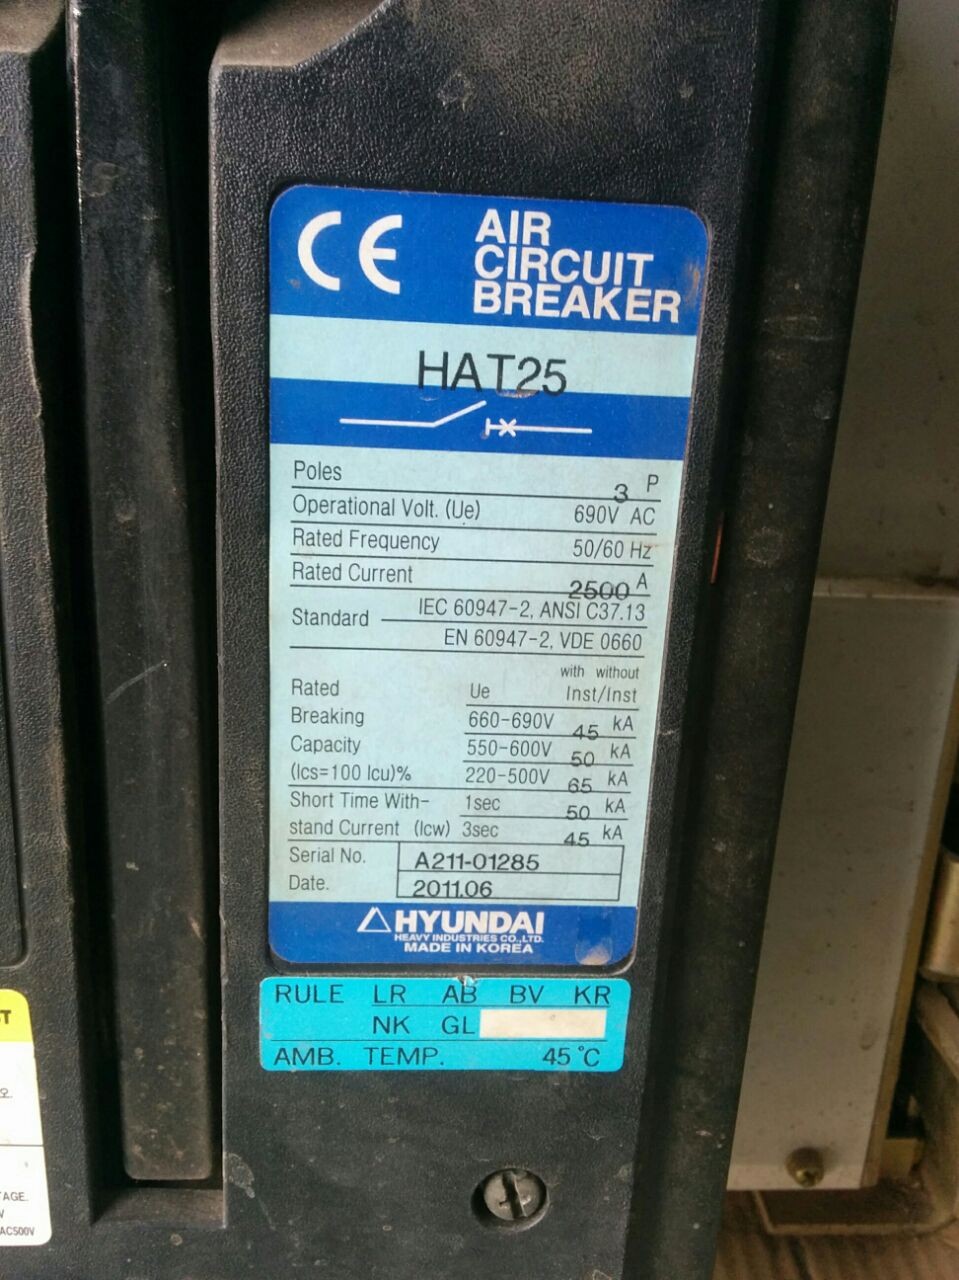 Air Circuit Breakers -  HAt 25